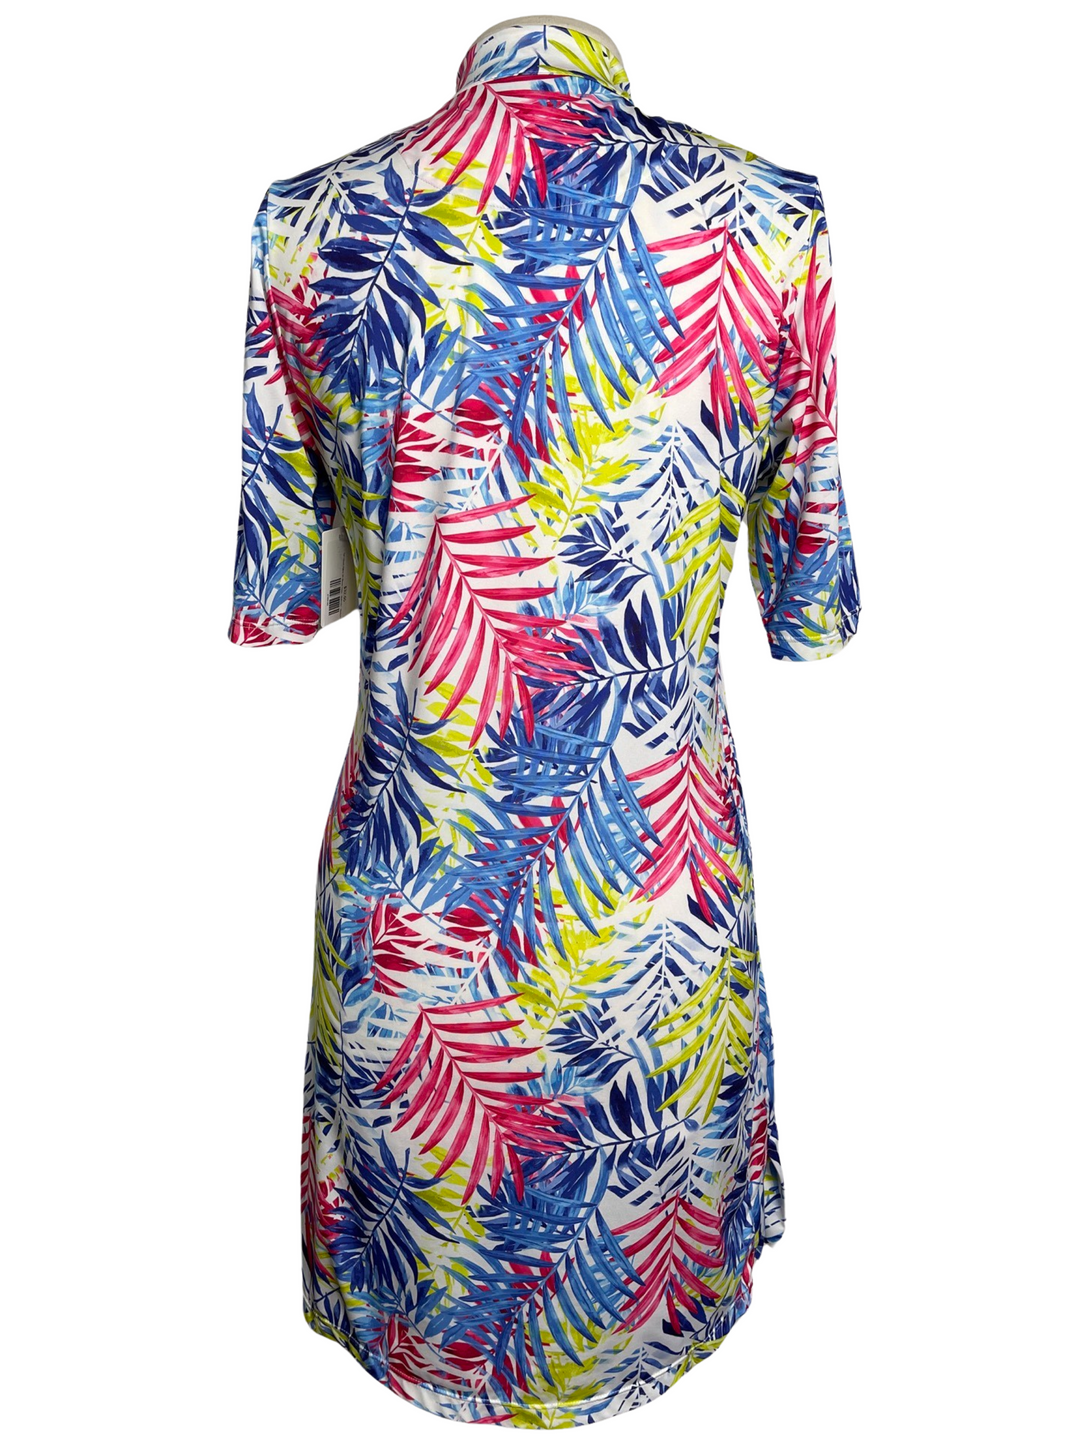 Tail Vibrant Palms 3/4 Sleeve Dress - Multicolor - Medium - Skorzie